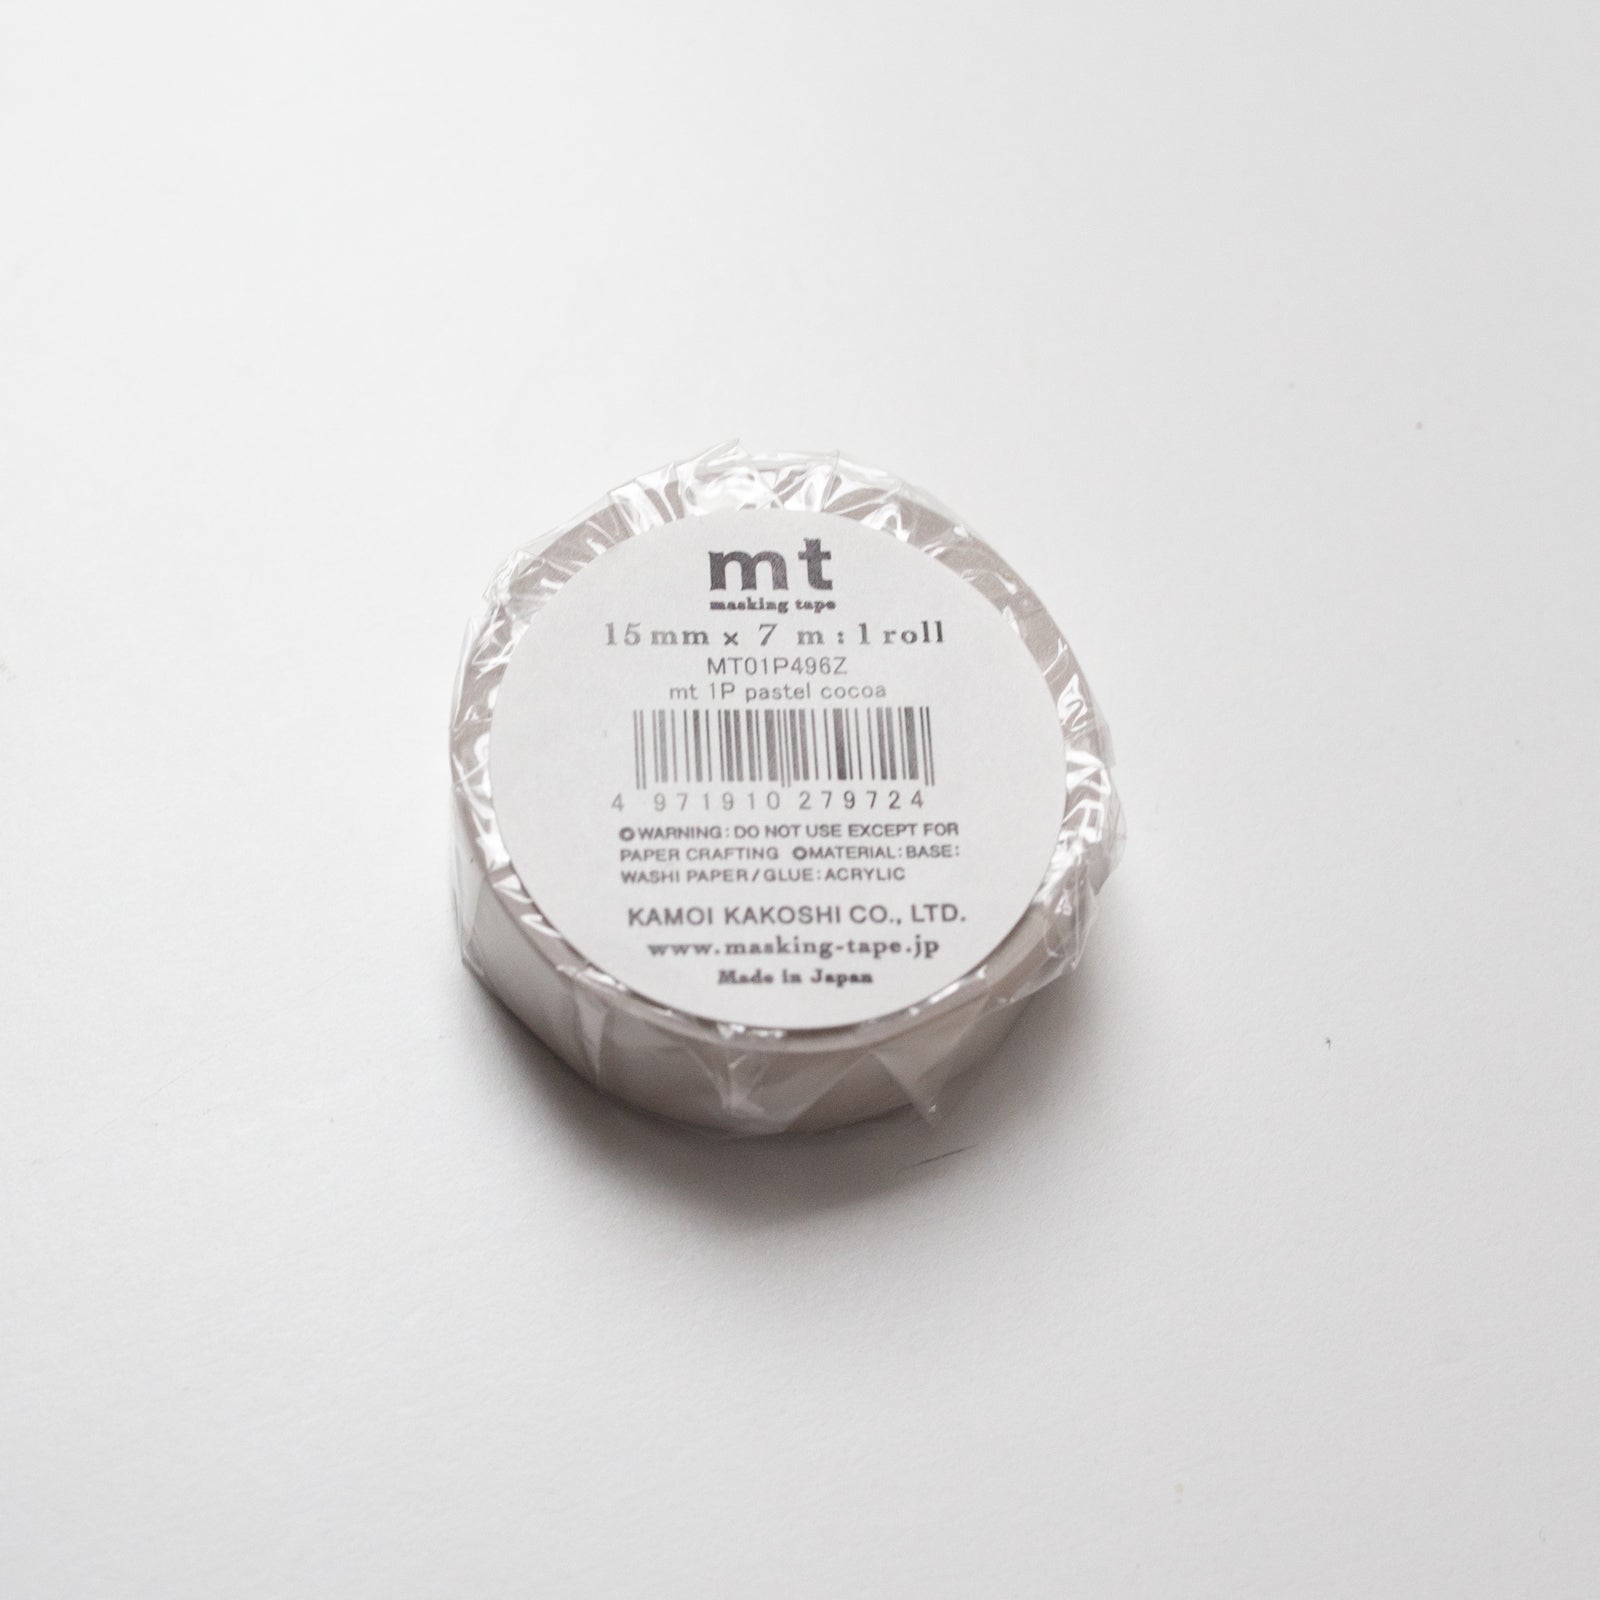 MT Masking tape Basic Pastel Cocoa